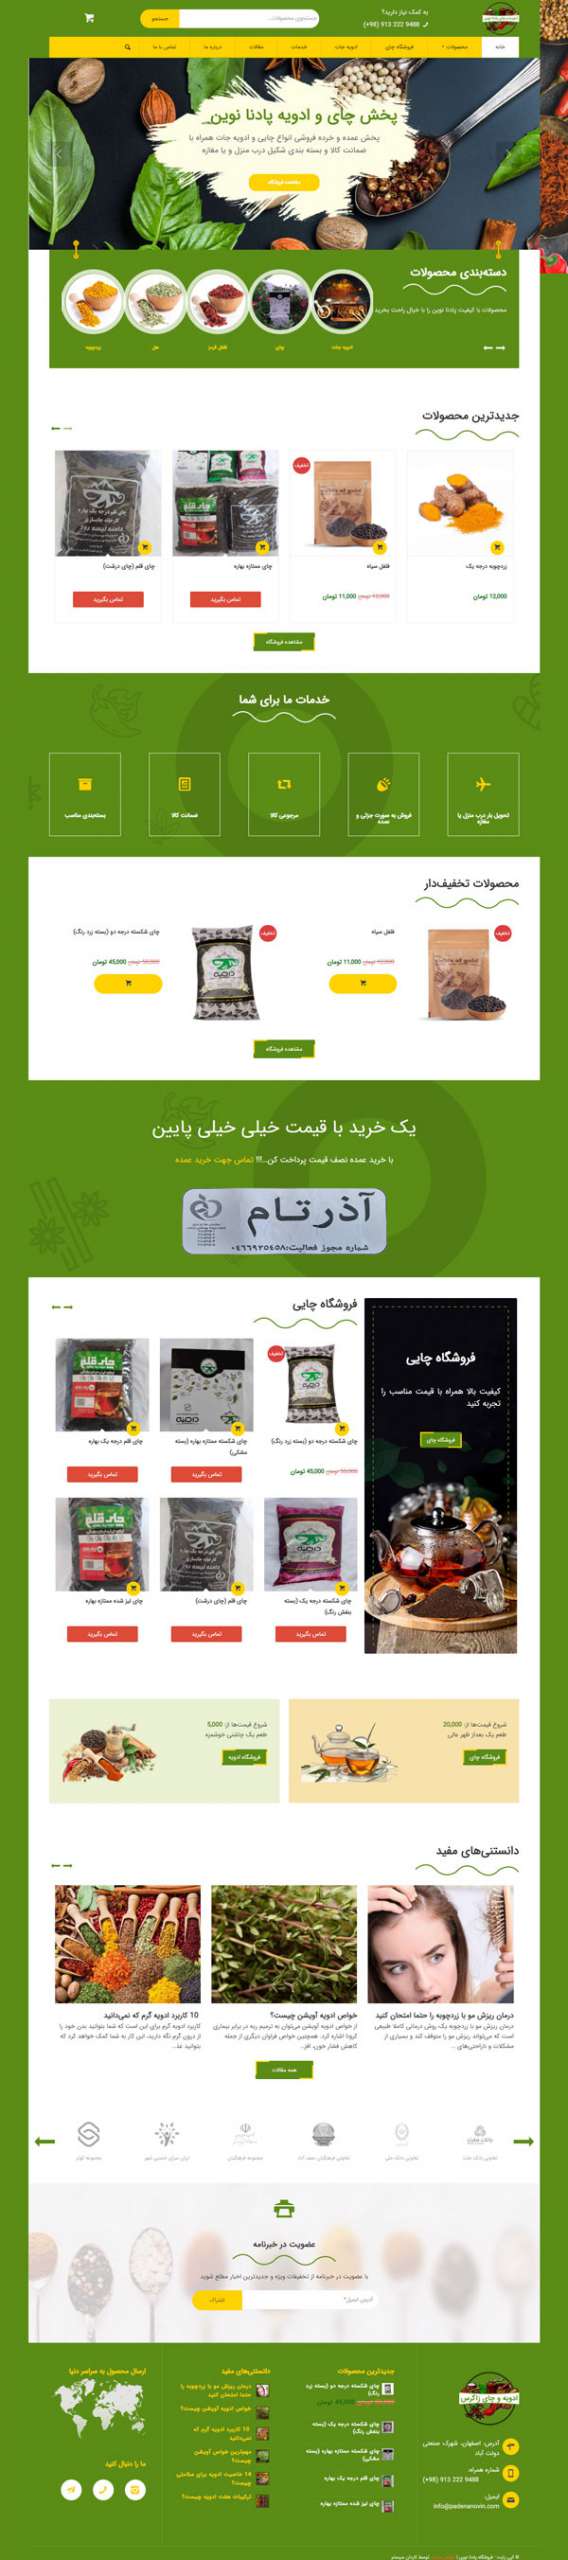 طراحی سایت پادنا نوین | فروشگاه ادویه، طعم دهنده‌ها و چای ایرانی